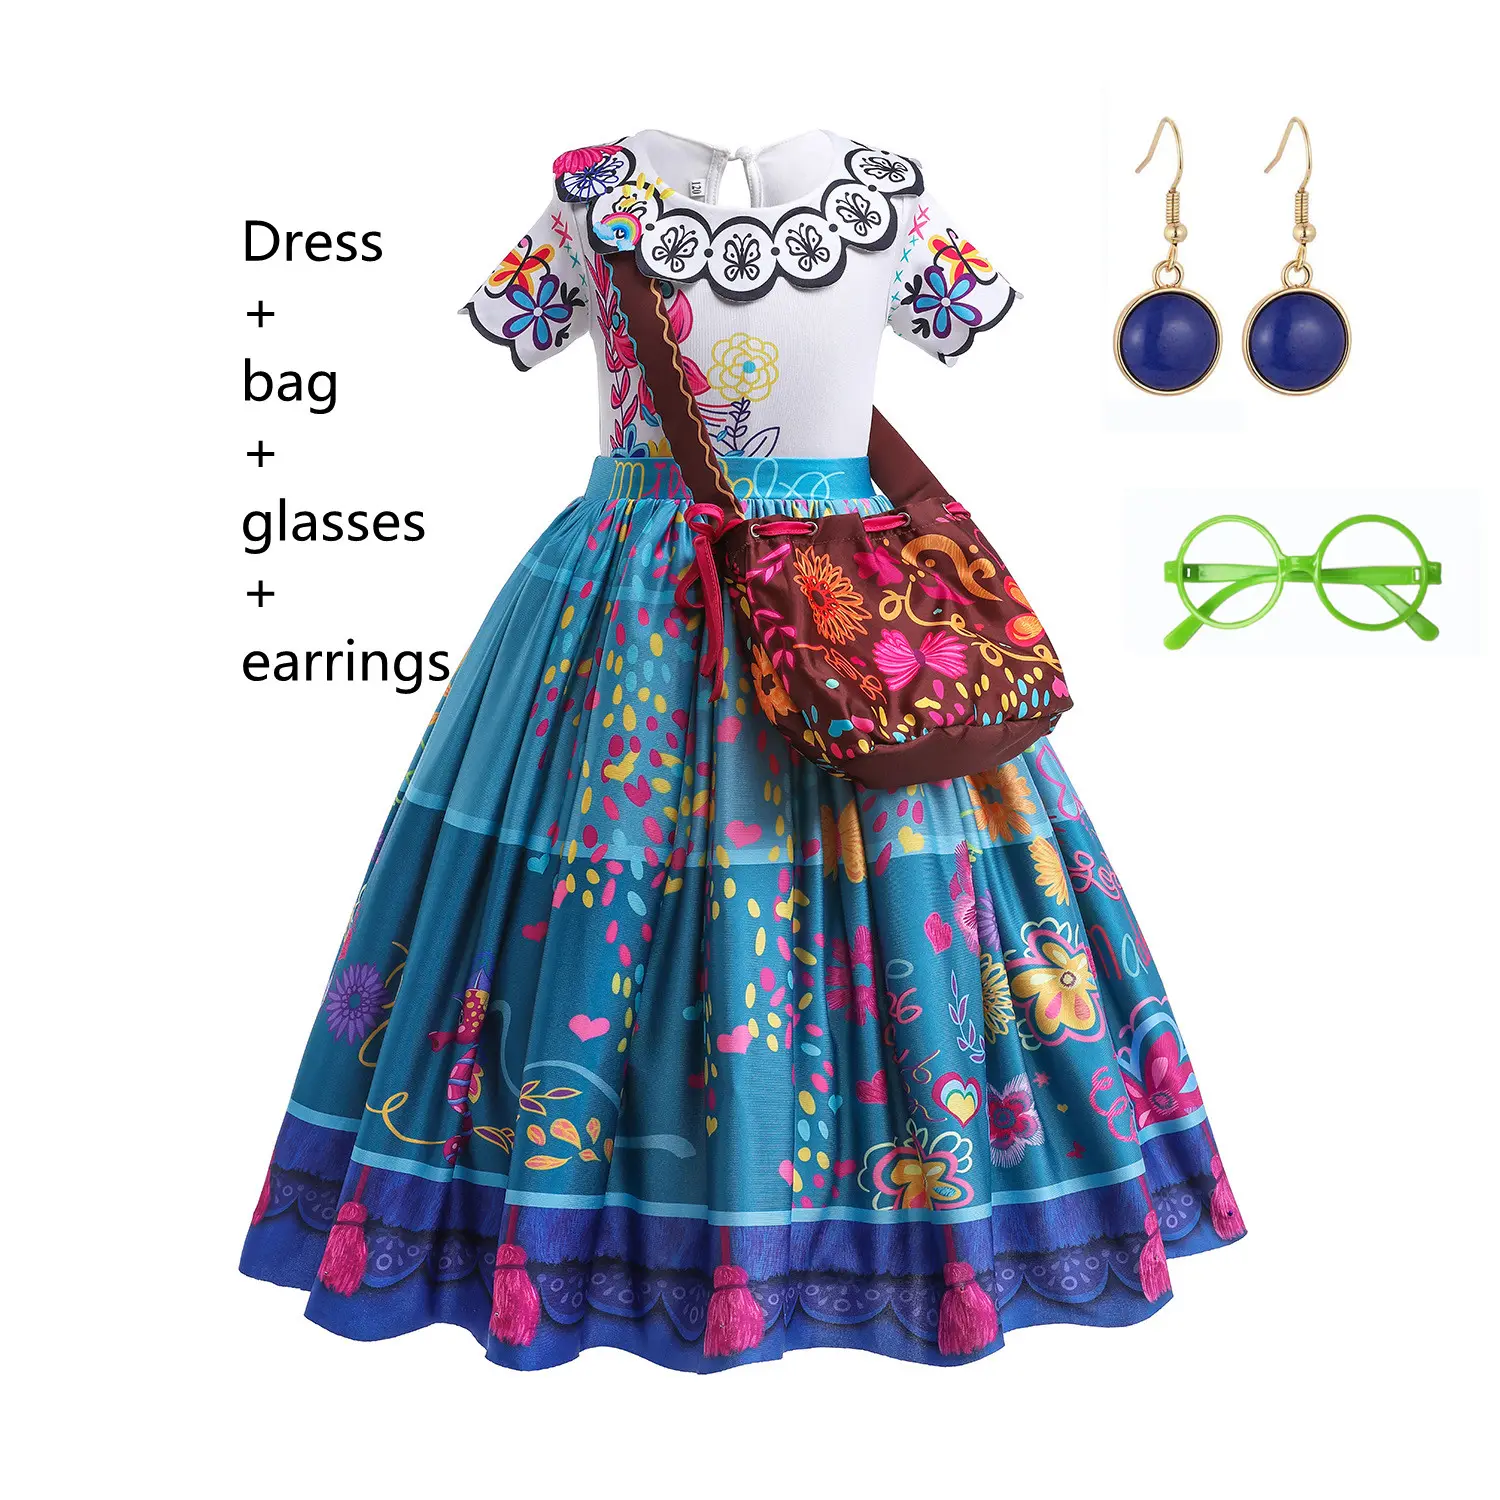 Mirabel טלוויזיה סרט קוספליי תלבושות ילדים ילדי מפואר קרנבל ליל כל הקדושים נסיכה להתלבש Encanto המדריגל שמלה